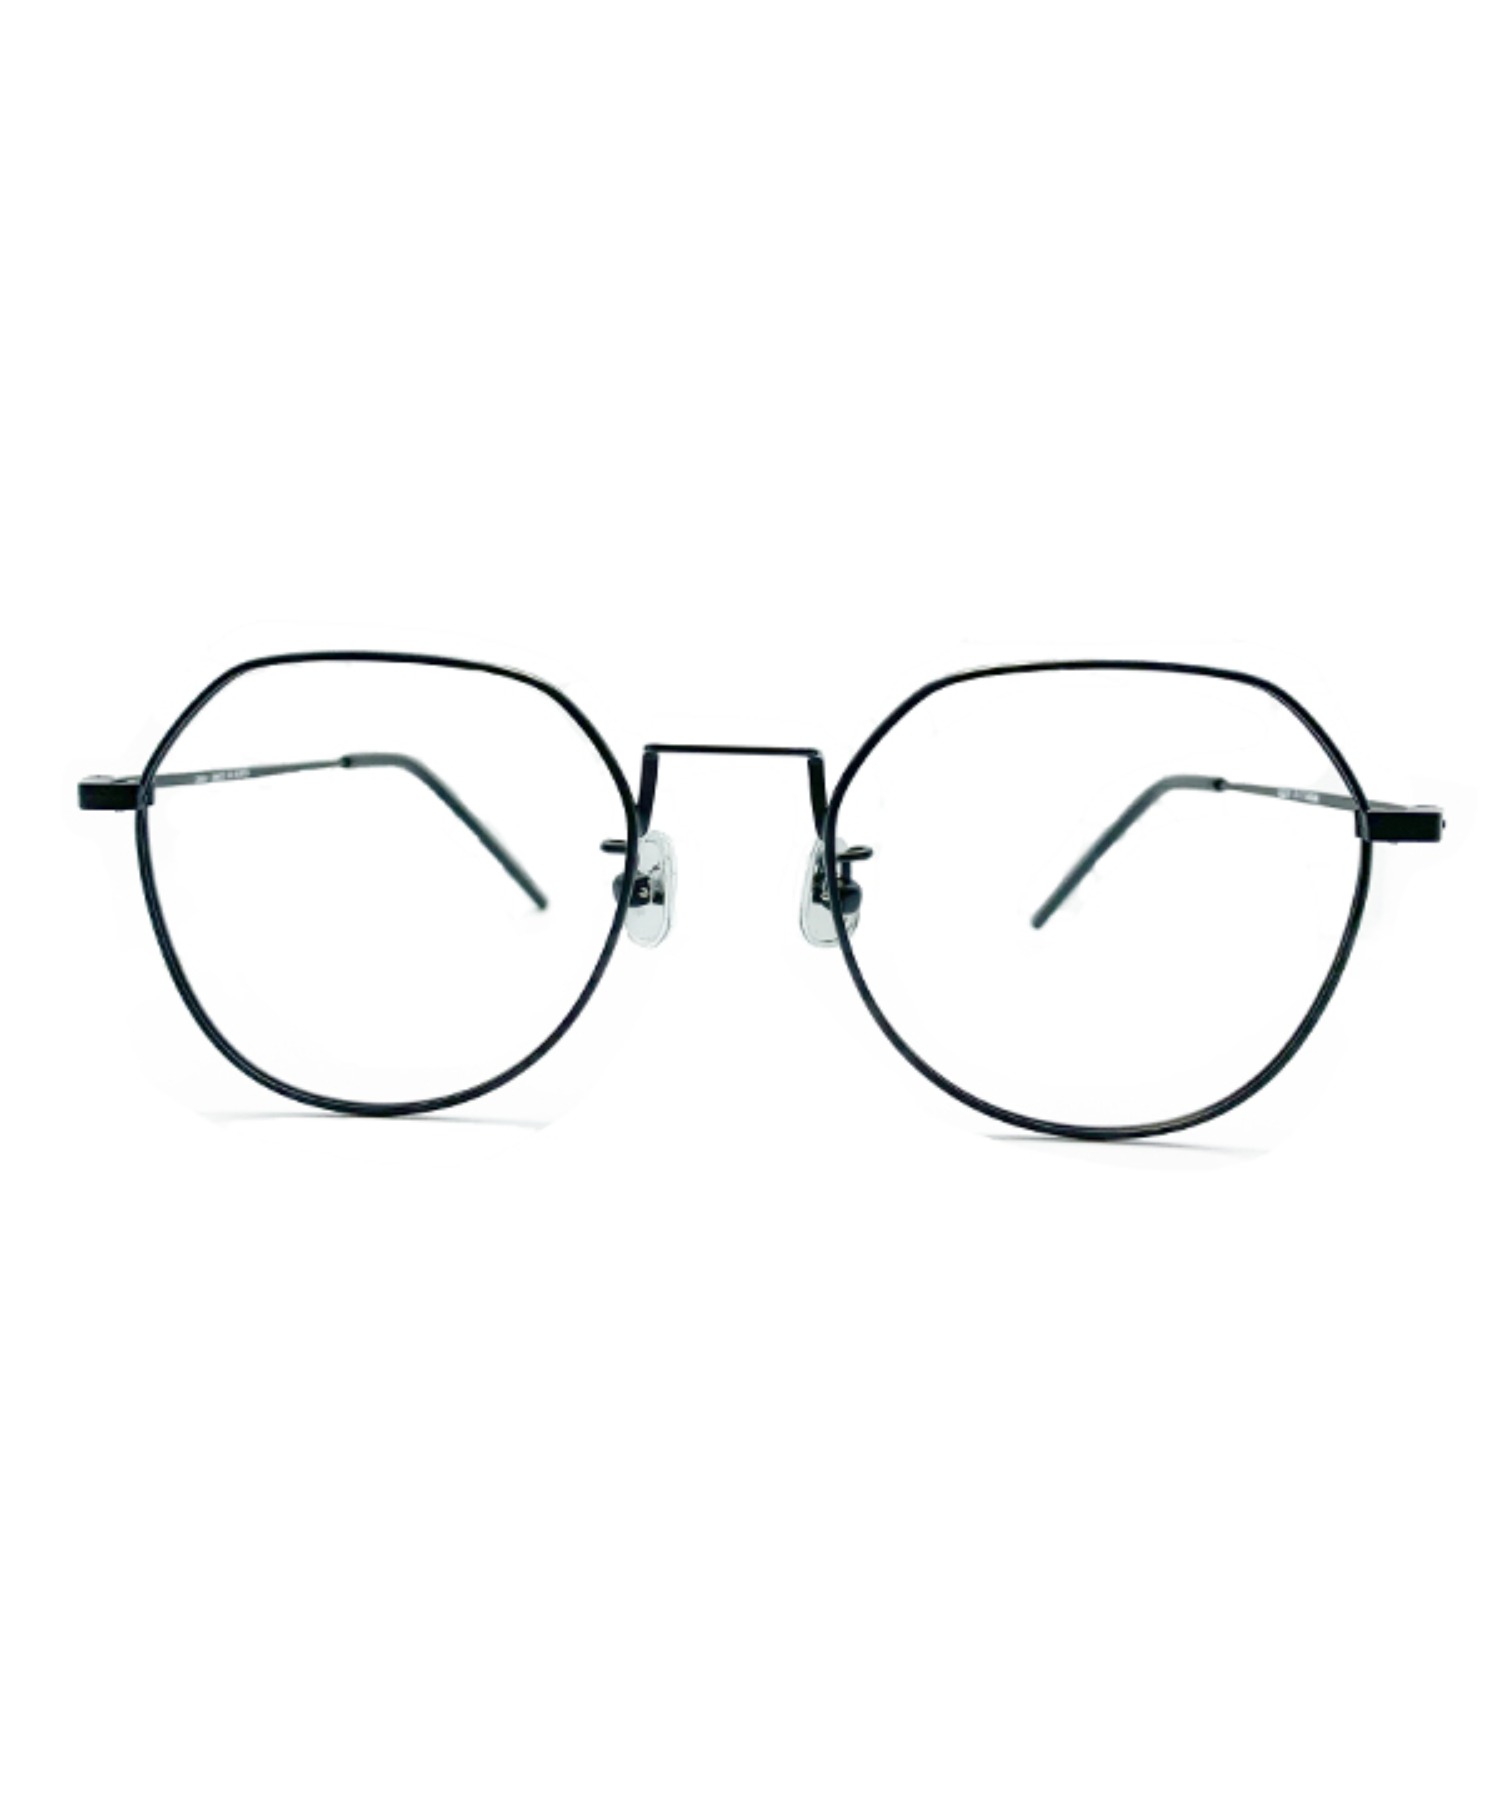 VLING 2DITOR, Korean glasses, sunglasses, eyeglasses, glasses